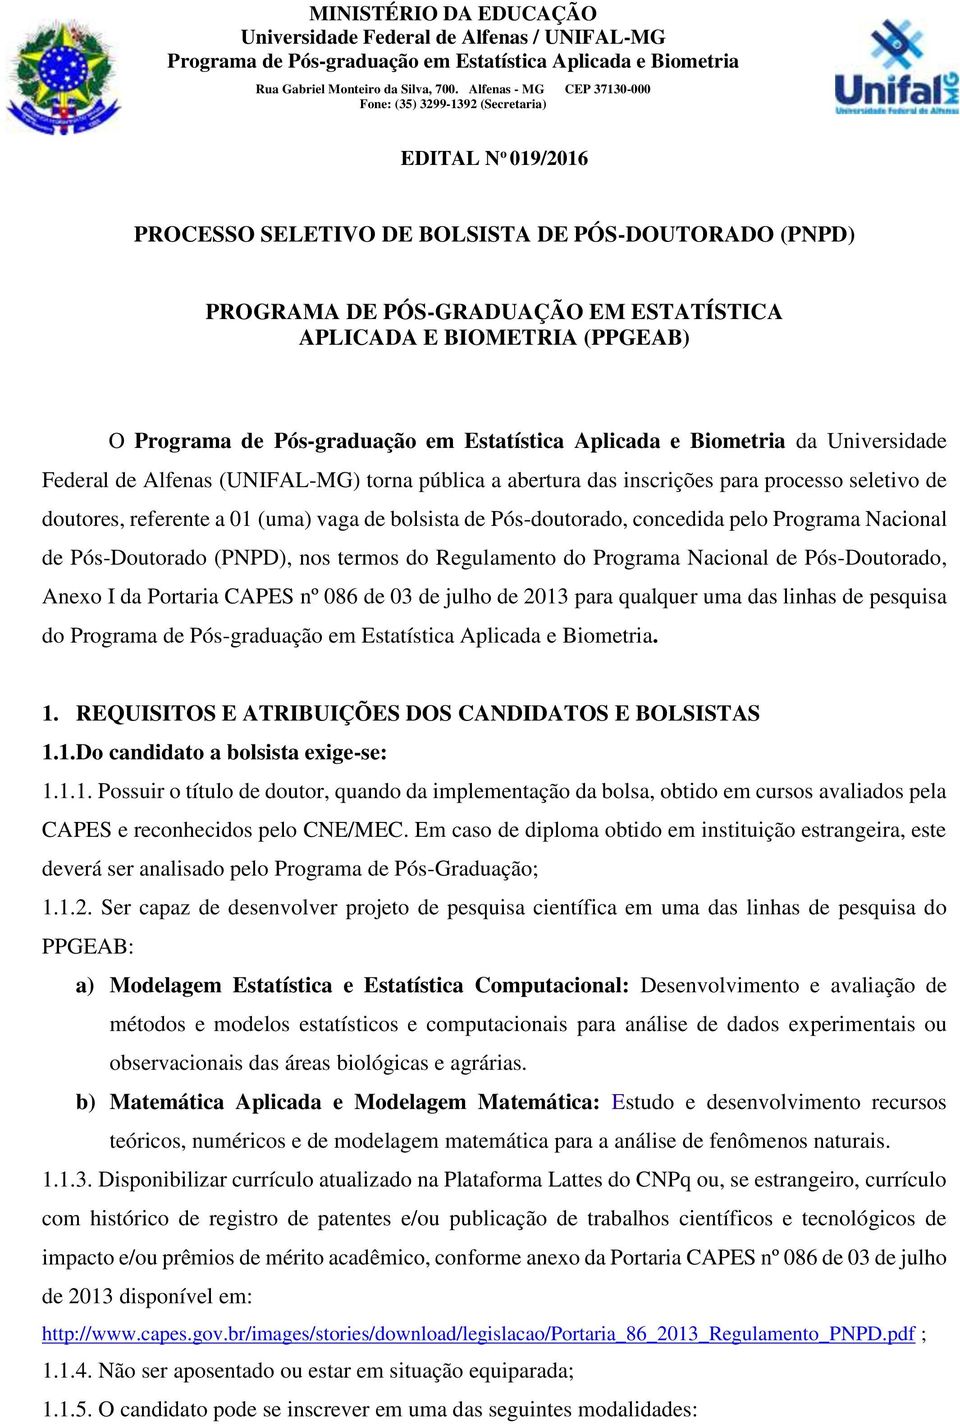 Regulamento do Programa Nacional de Pós-Doutorado, Anexo I da Portaria CAPES nº 086 de 03 de julho de 2013 para qualquer uma das linhas de pesquisa do. 1.